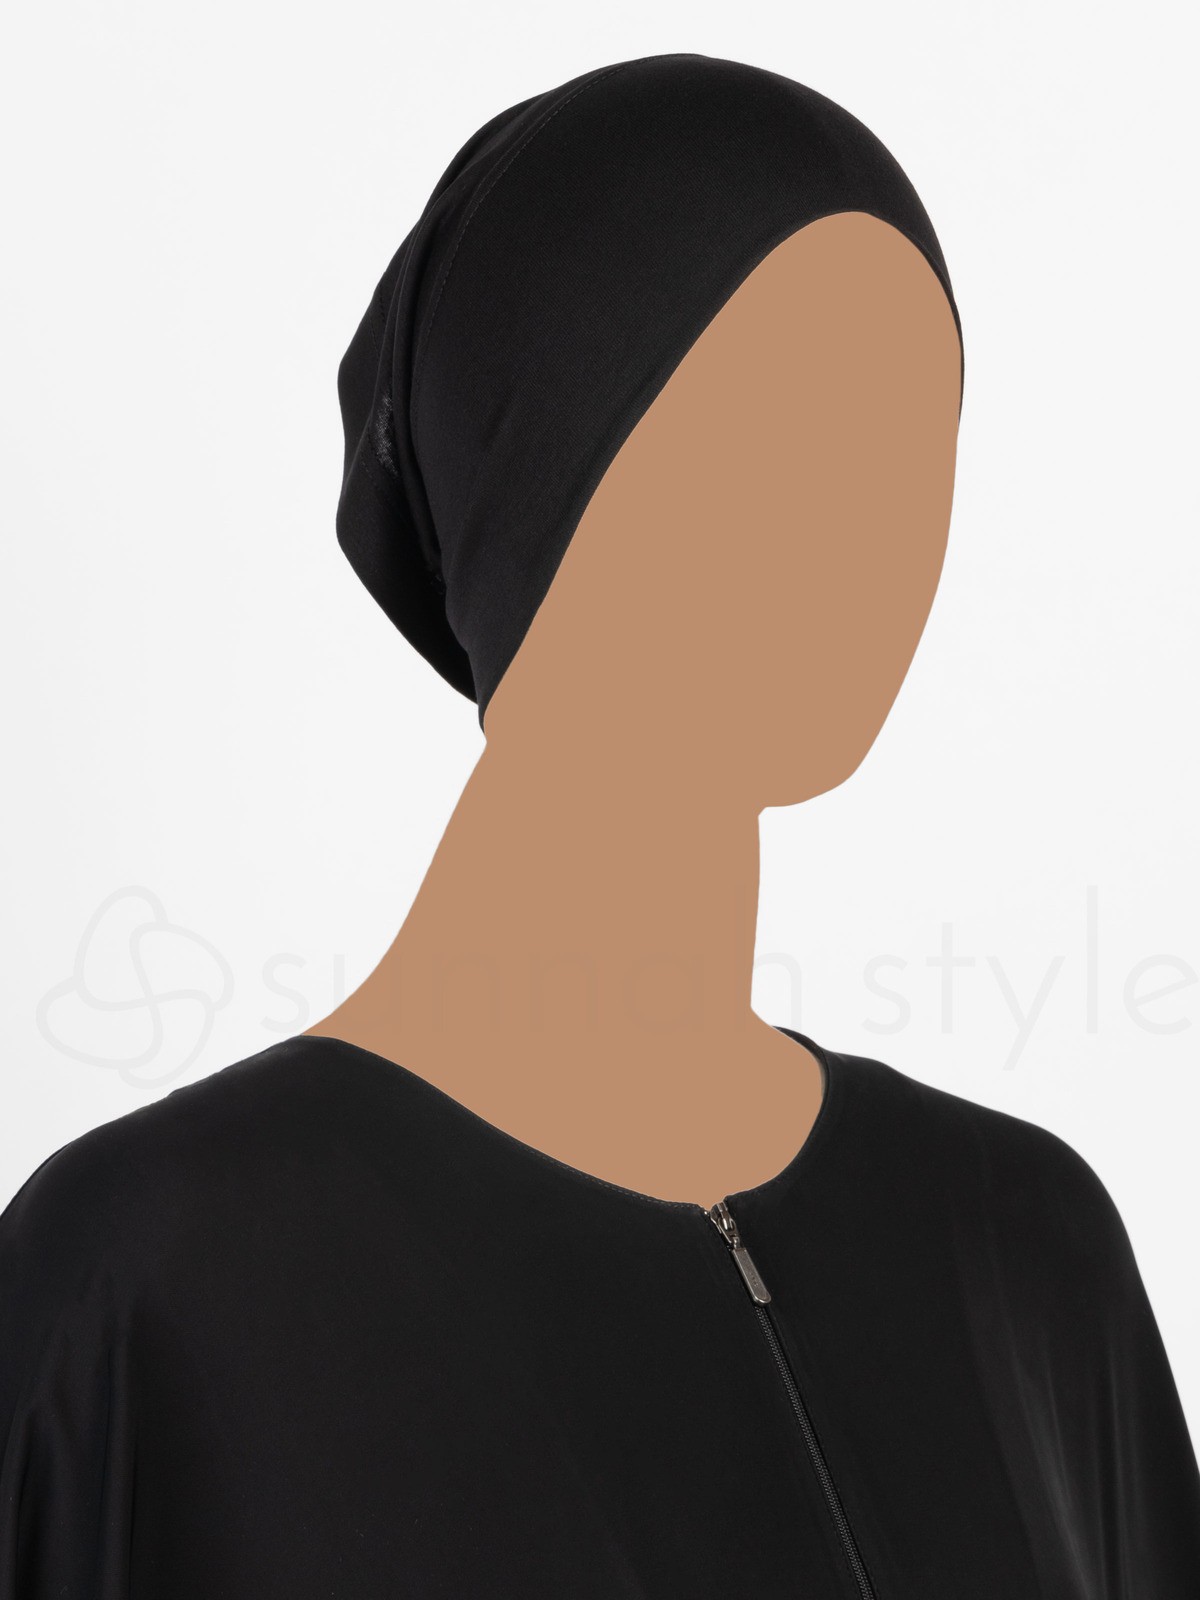 Sunnah Style - Rayon Tube Underscarf (Black)